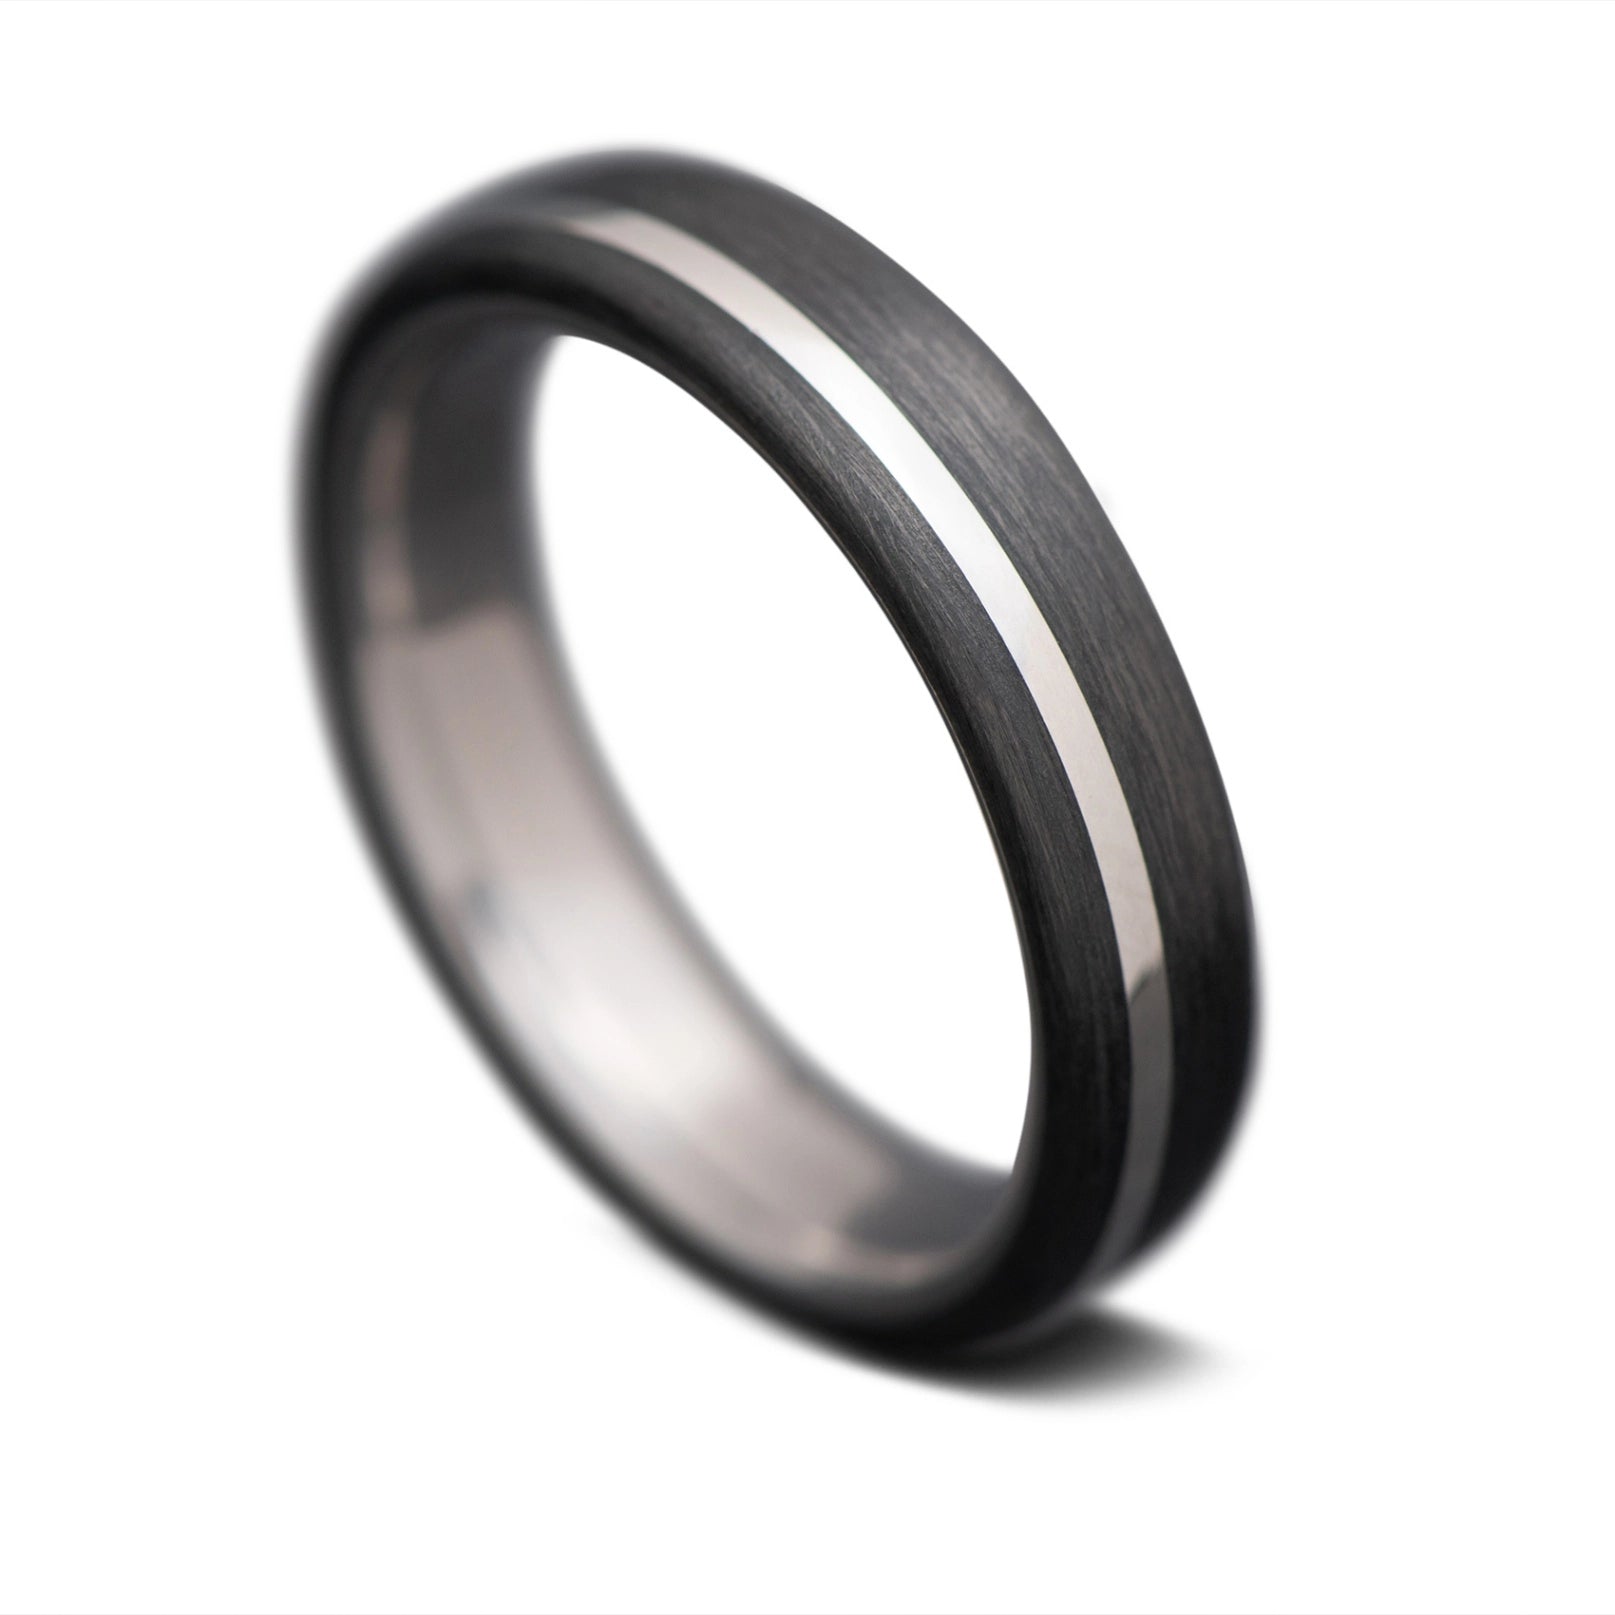 CarbonUni core ring with titanium inlay, 4mm -THE VERTEX